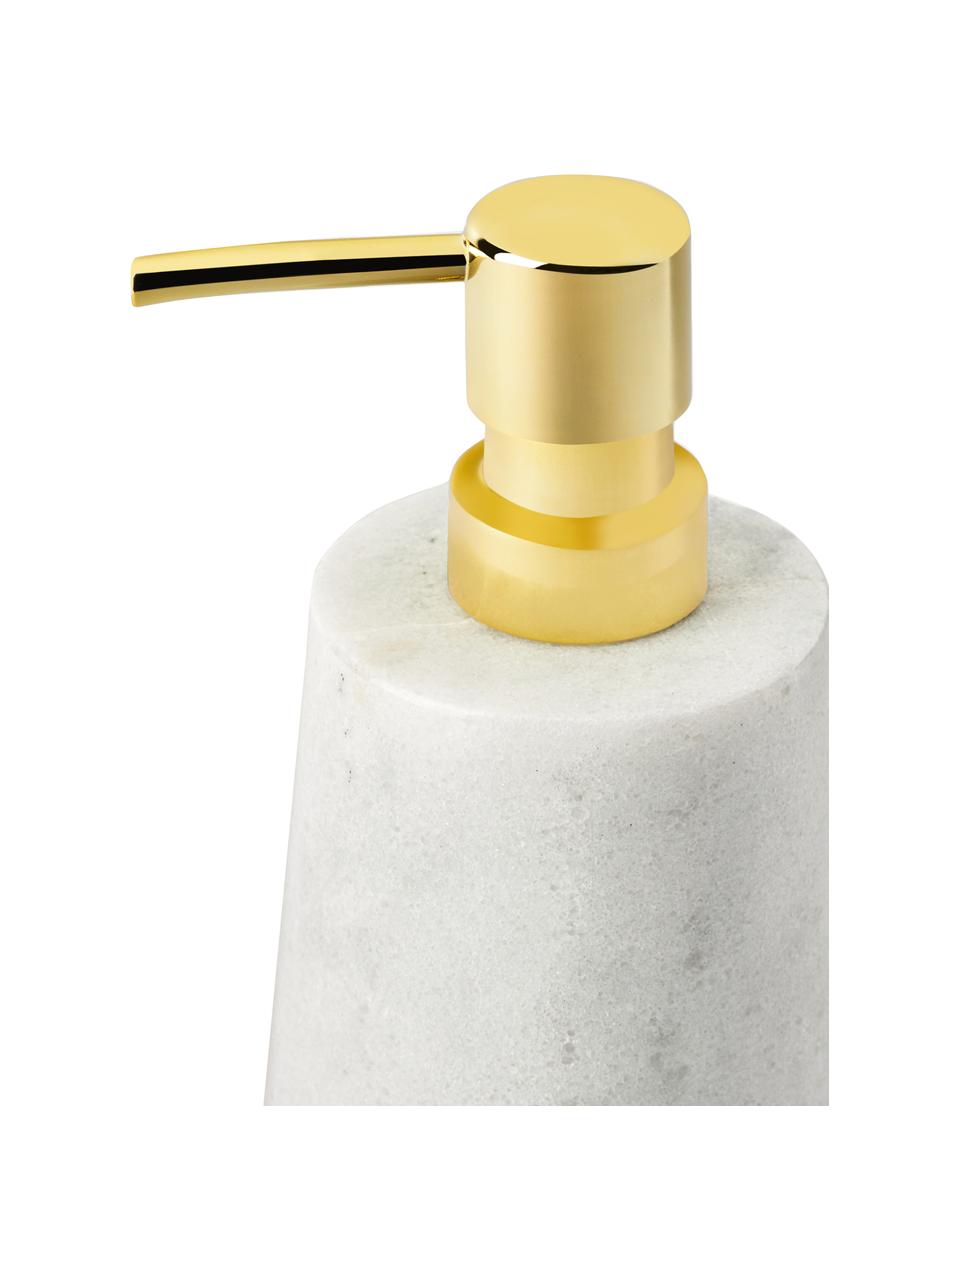 Marmor-Seifenspender Lux, Behälter: Marmor, Pumpkopf: Kunststoff, Weiß, marmoriert, Goldfarben, Ø 8 x H 17 cm